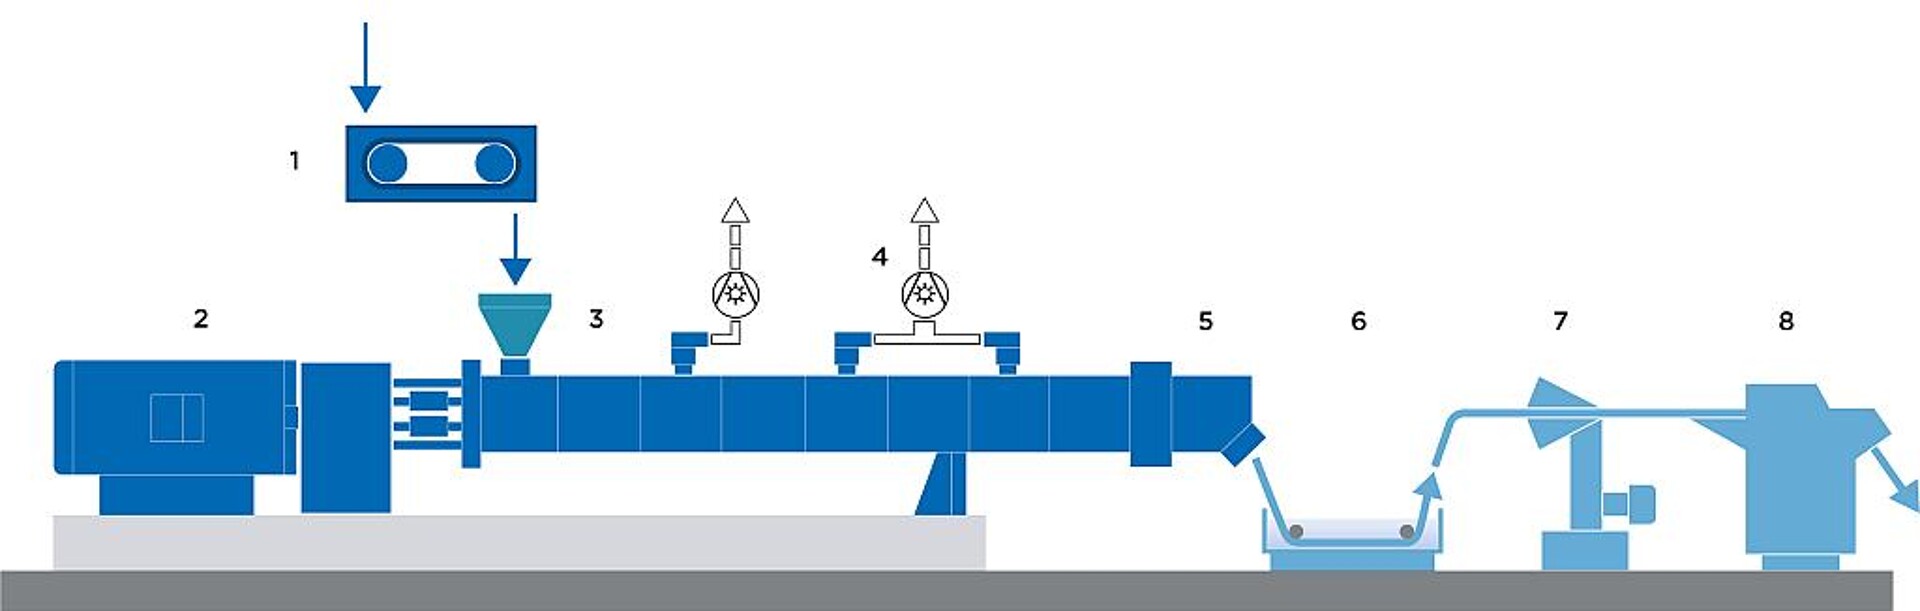 Typischer Aufbau einer Recyclinganlage, auf der PET-Flakes wirtschaftlich zu PET-Granulat aufbereitet werden: 1 - Bandwaage SWB, 2 - ZSK Doppelschneckenextruder, 3 - Zugabe von PET-Flakes, 4 -Entgasung flüchtiger Bestandteile, 5 - Austrag mit Zahnradpumpe und Filter, 6 – Wasserbad, 7 –Strangtrocknung, 8 – Stranggranulierung. (Abb.: Coperion)